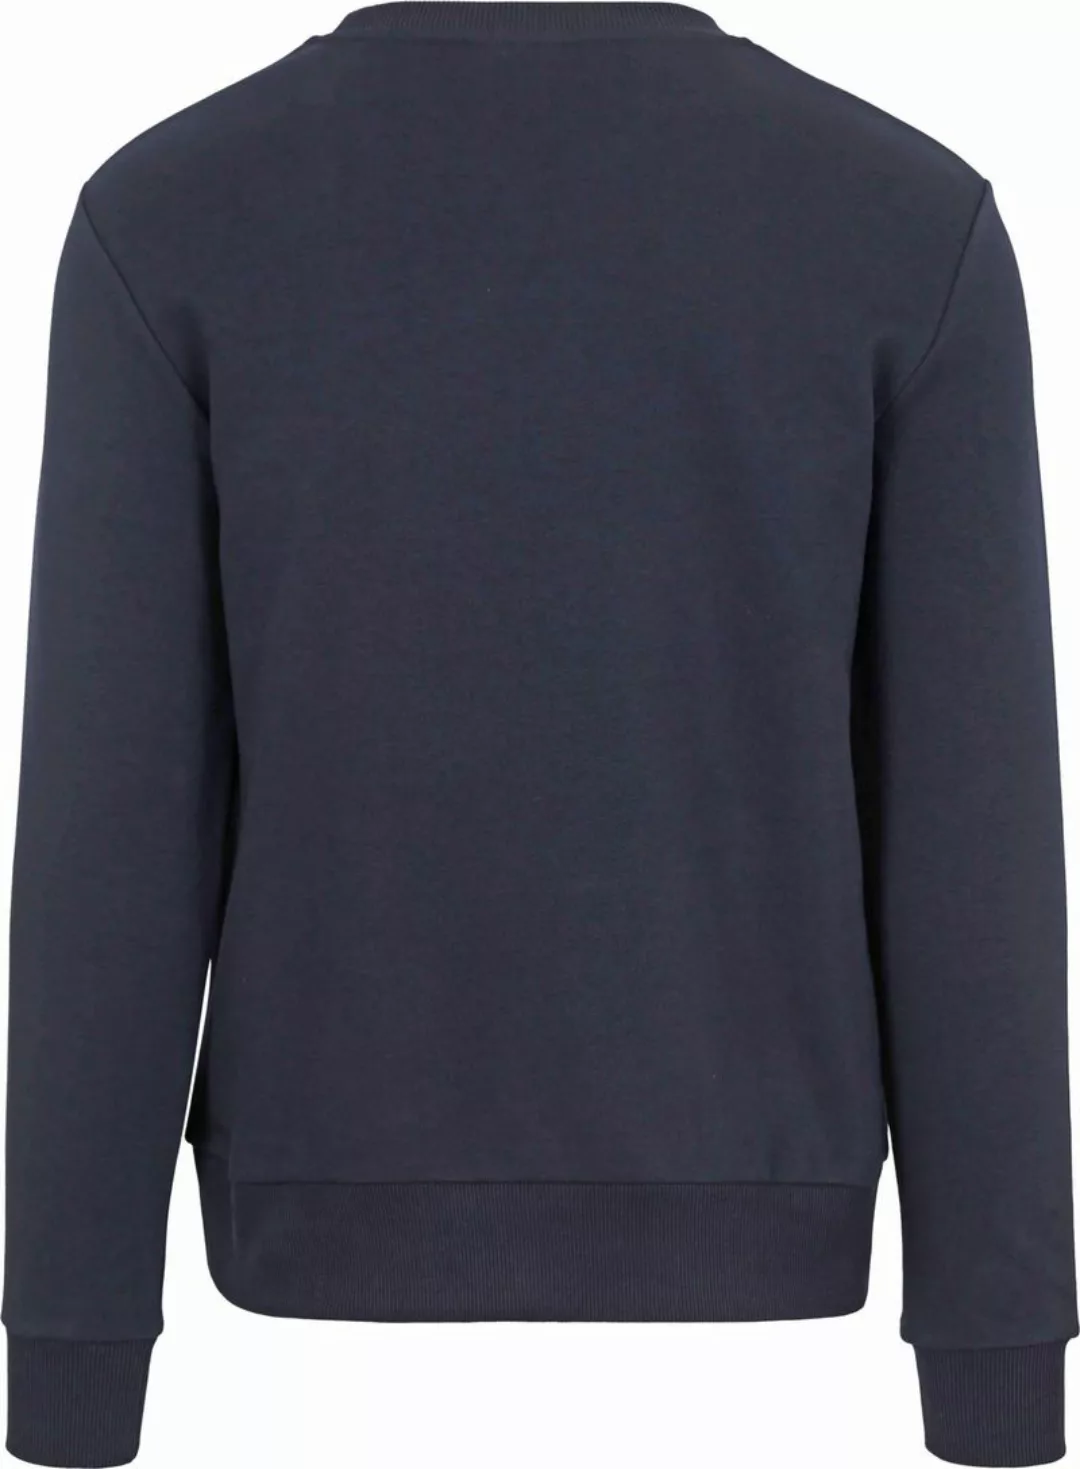 ANTWRP Sweater Boules Navy - Größe M günstig online kaufen